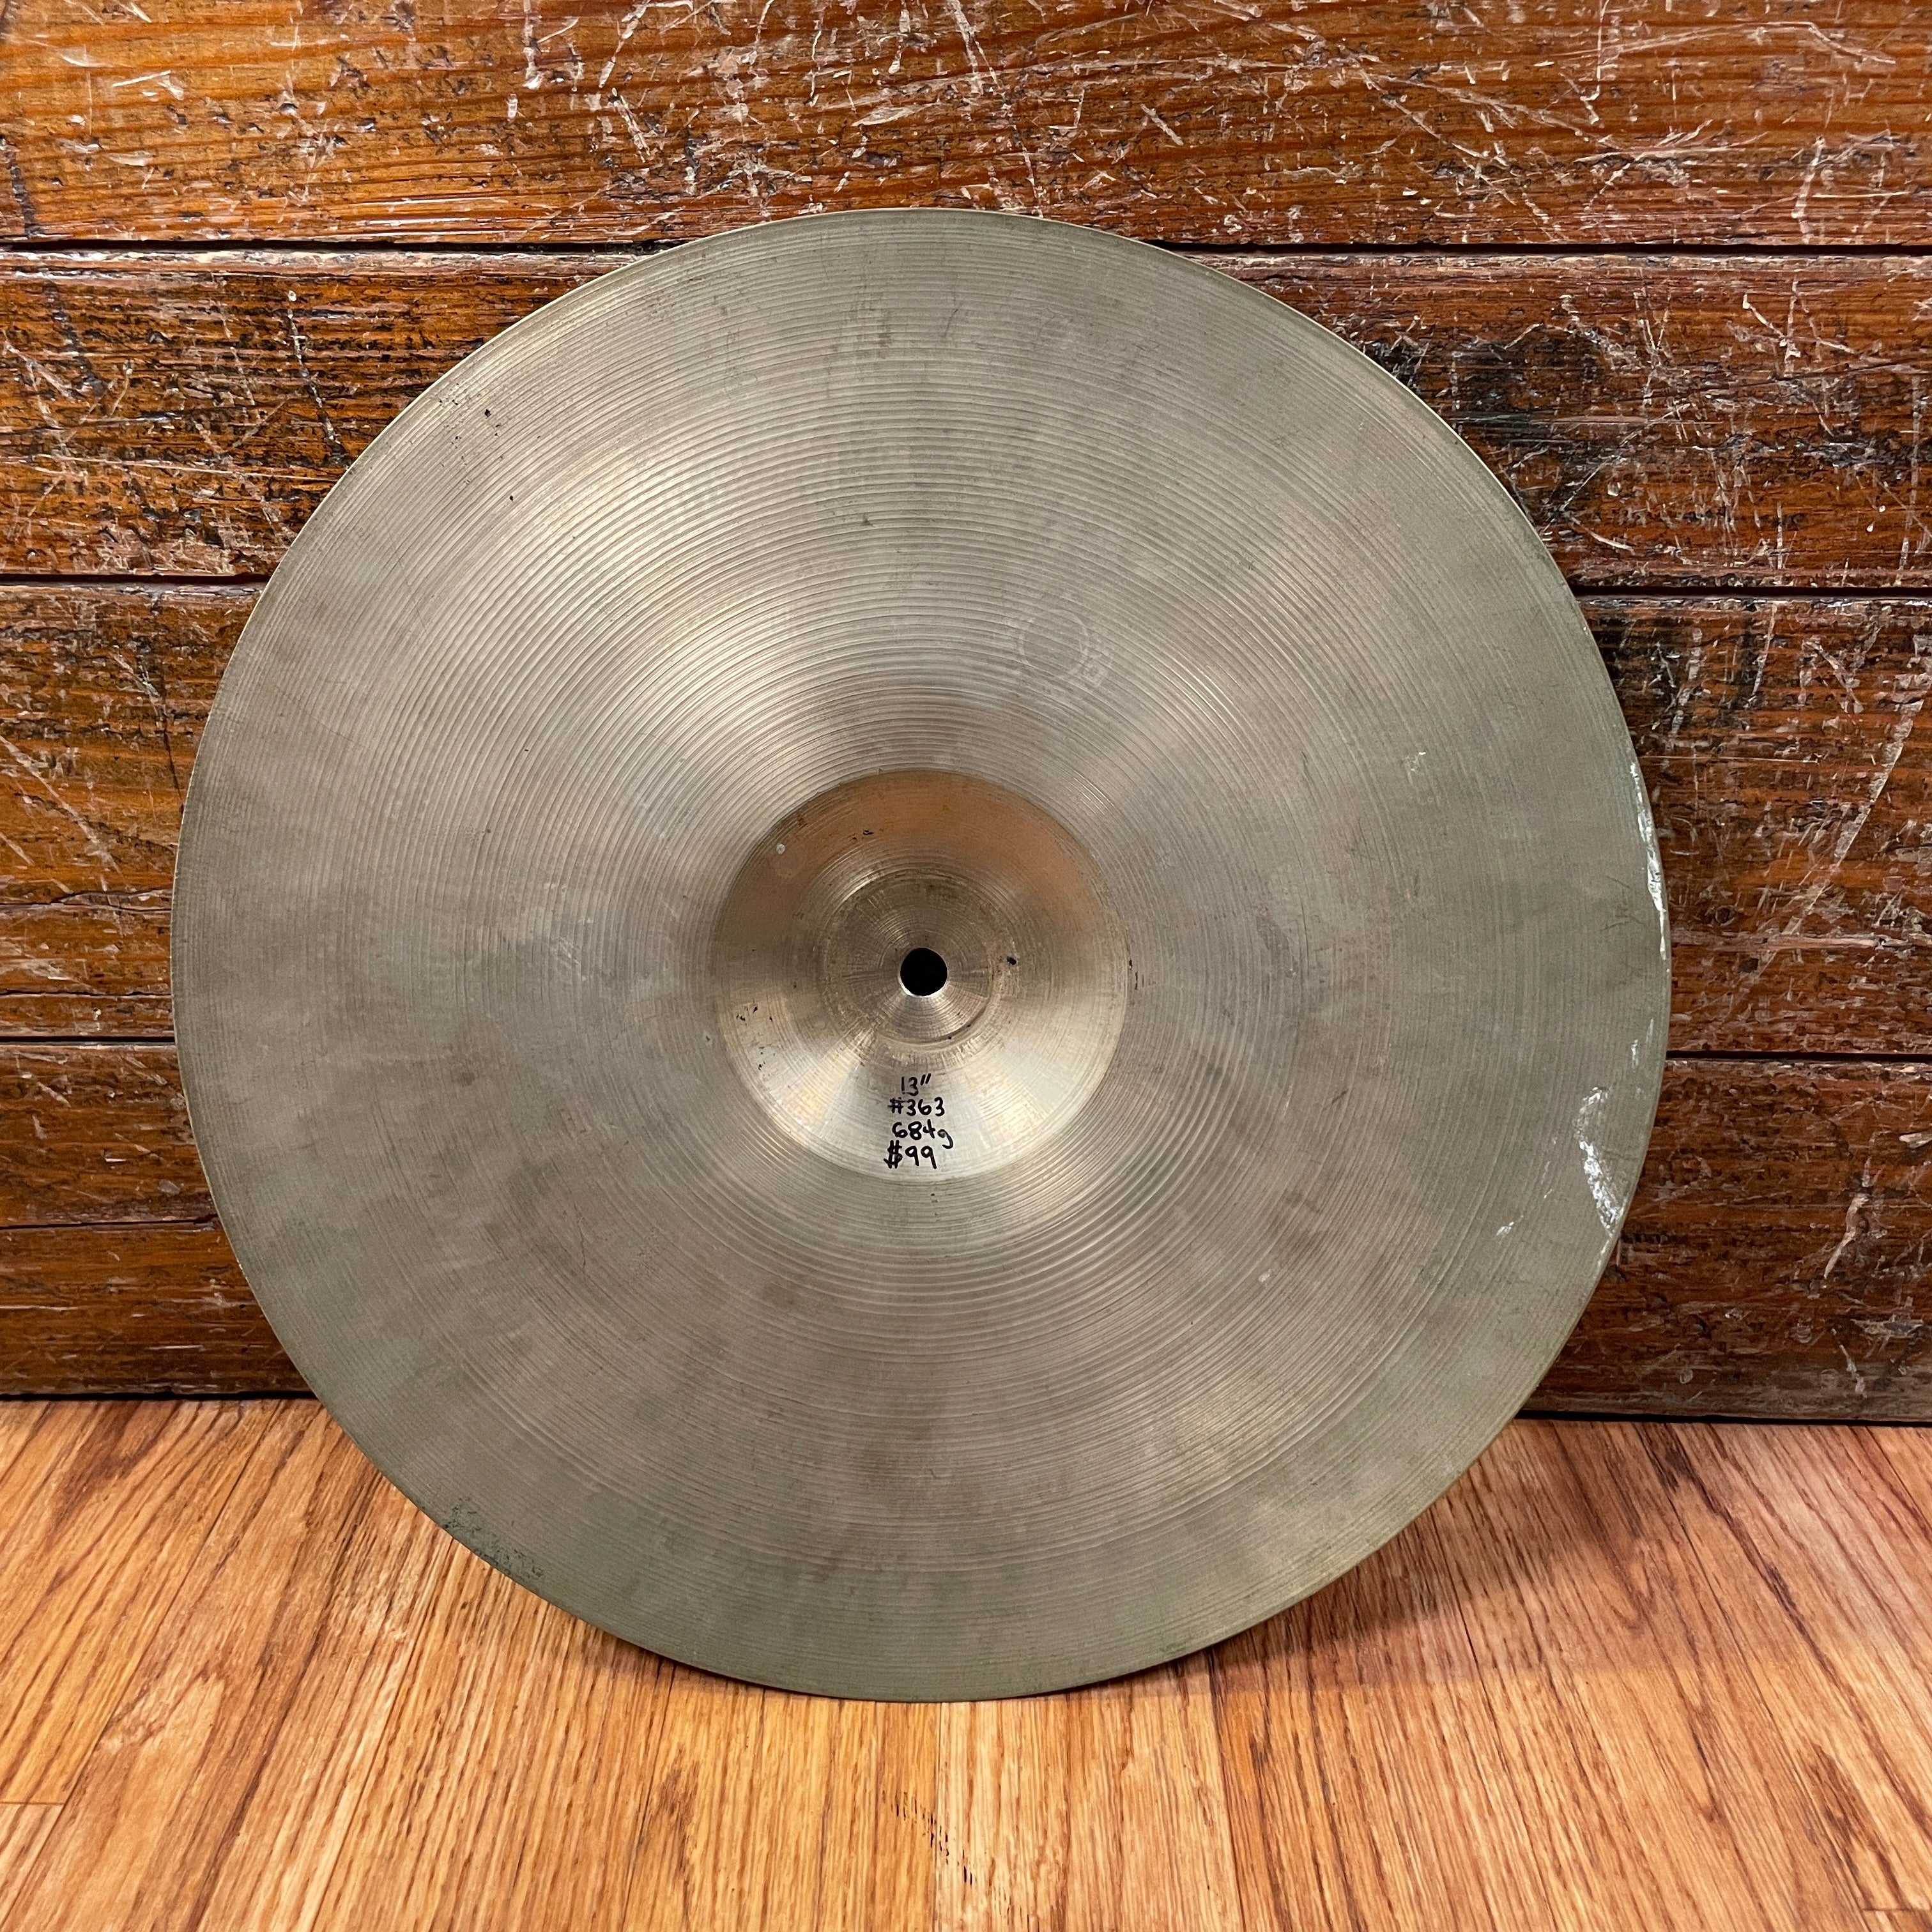 純正直売Zanci Vaibra 20 cymbal Vintage. Made in Italy シンバル